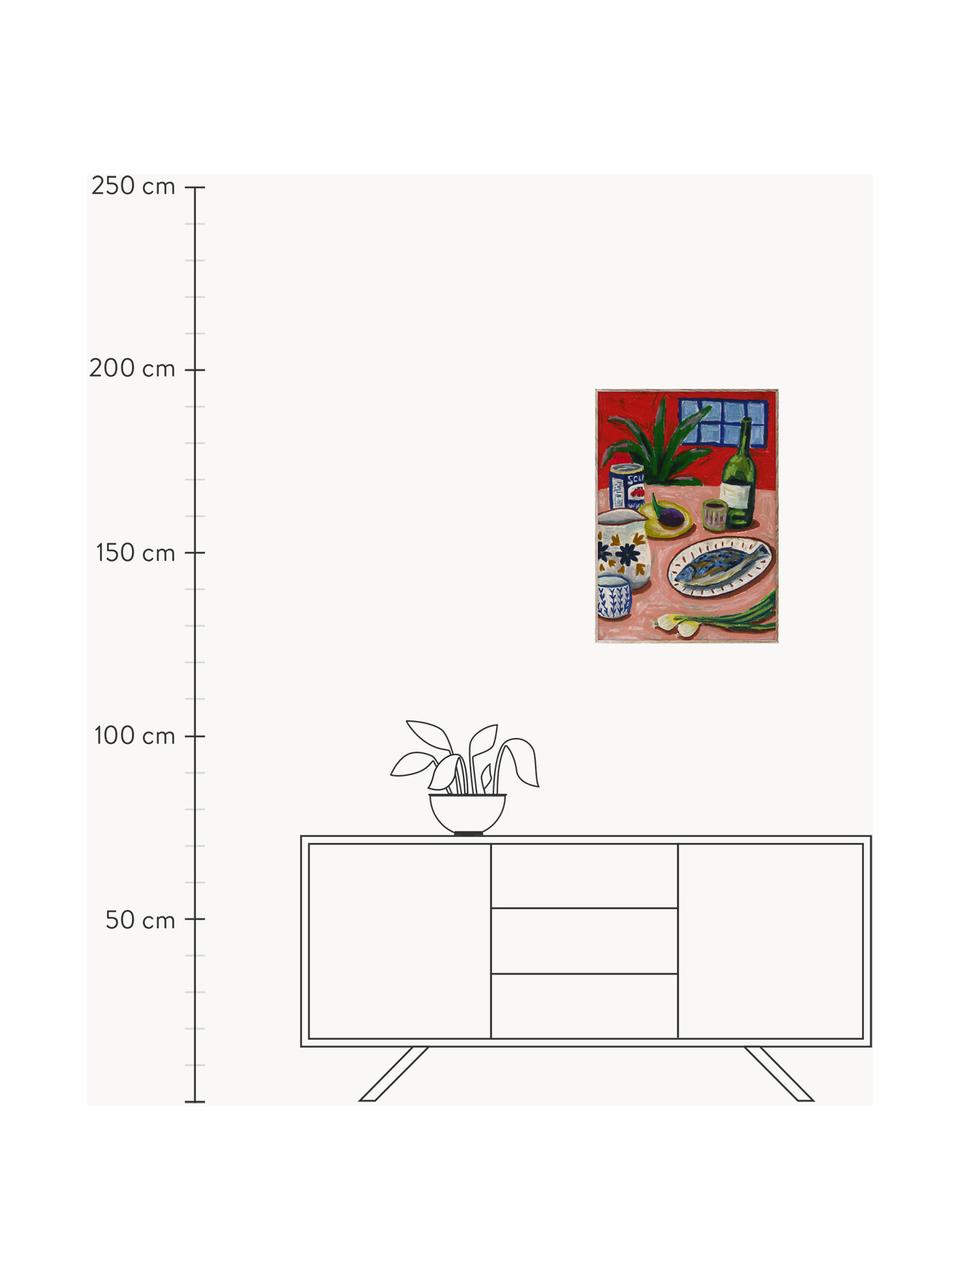 Plakát Composition with Fish, 210g matný papír Hahnemühle, digitální tisk s 10 barvami odolnými vůči UV záření, Červená, korálově červená, více barev, Š 30 cm, V 40 cm